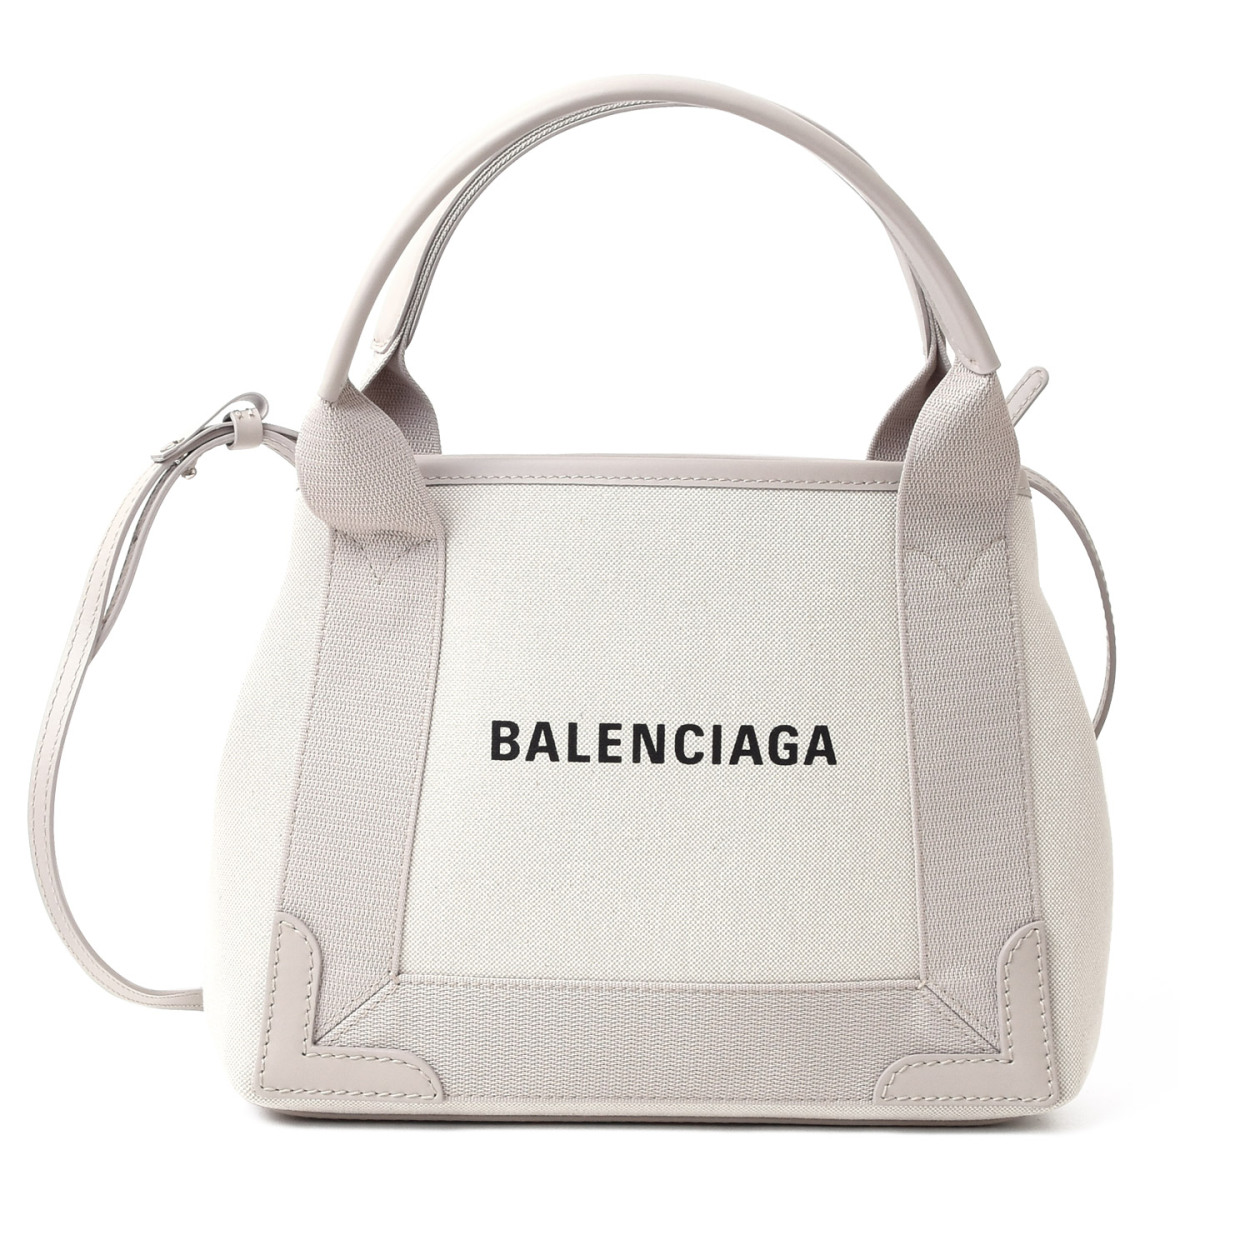 バレンシアガ BALENCIAGA トートバッグ 2way ネイビー カバン かばん 鞄 ショルダー 斜めがけ バッグ ミニ XS 専用保存袋付き